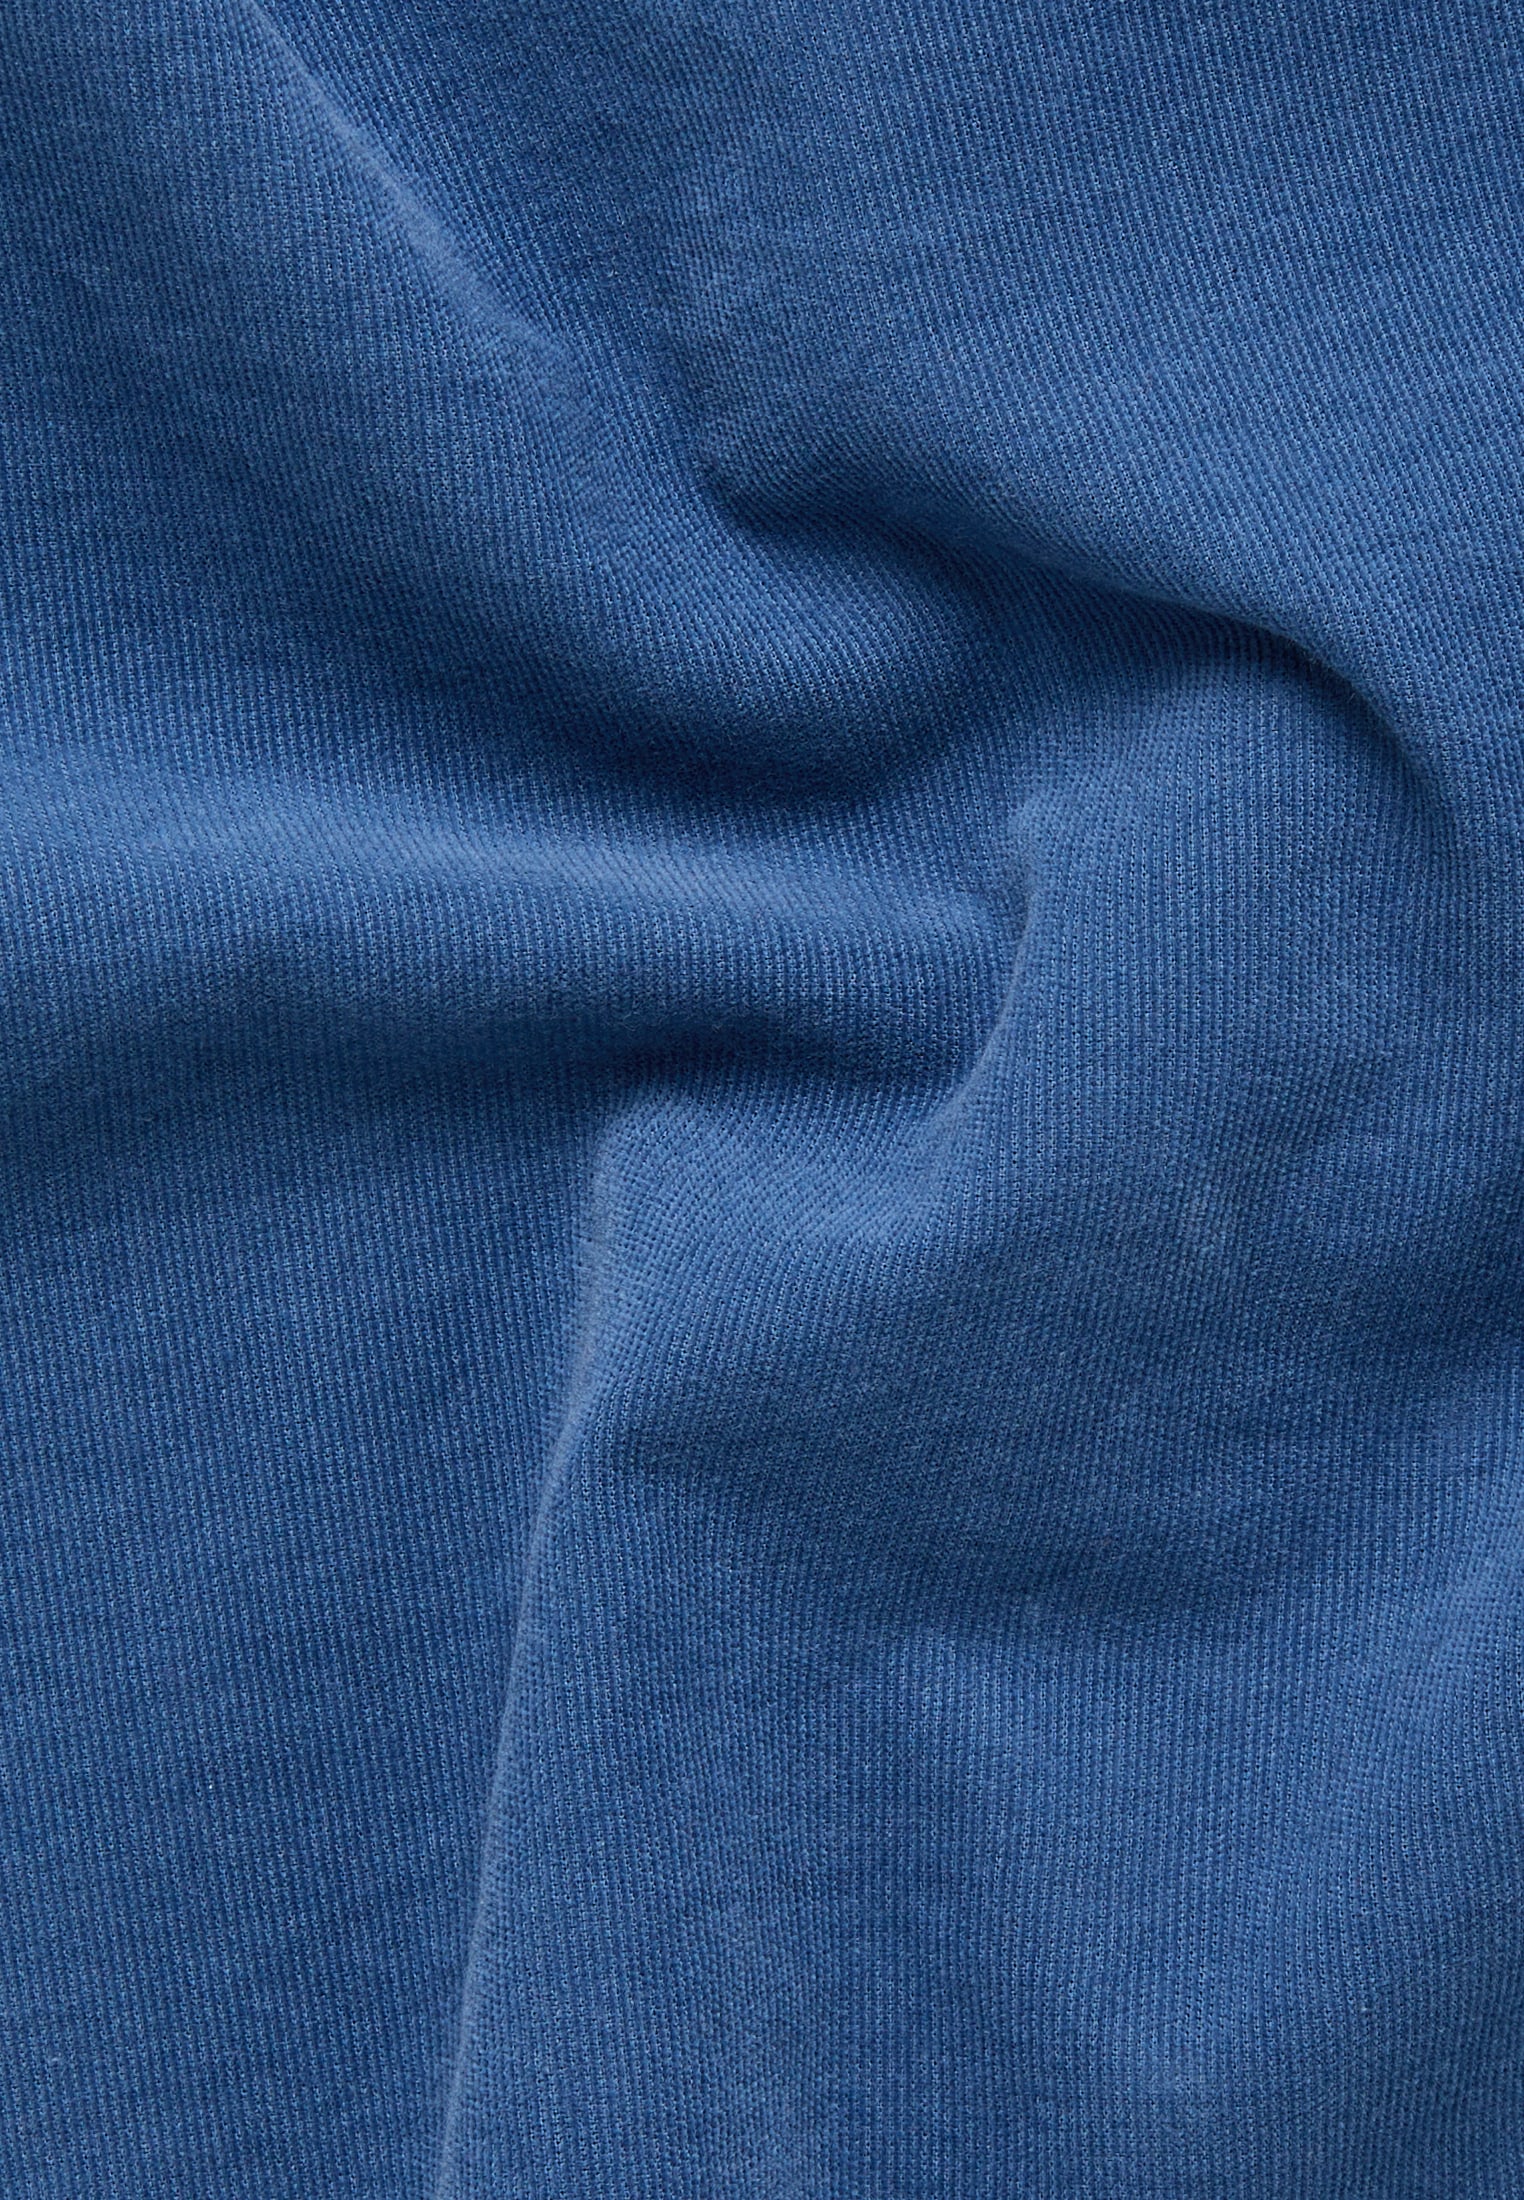 Shirt in smoke blue plain